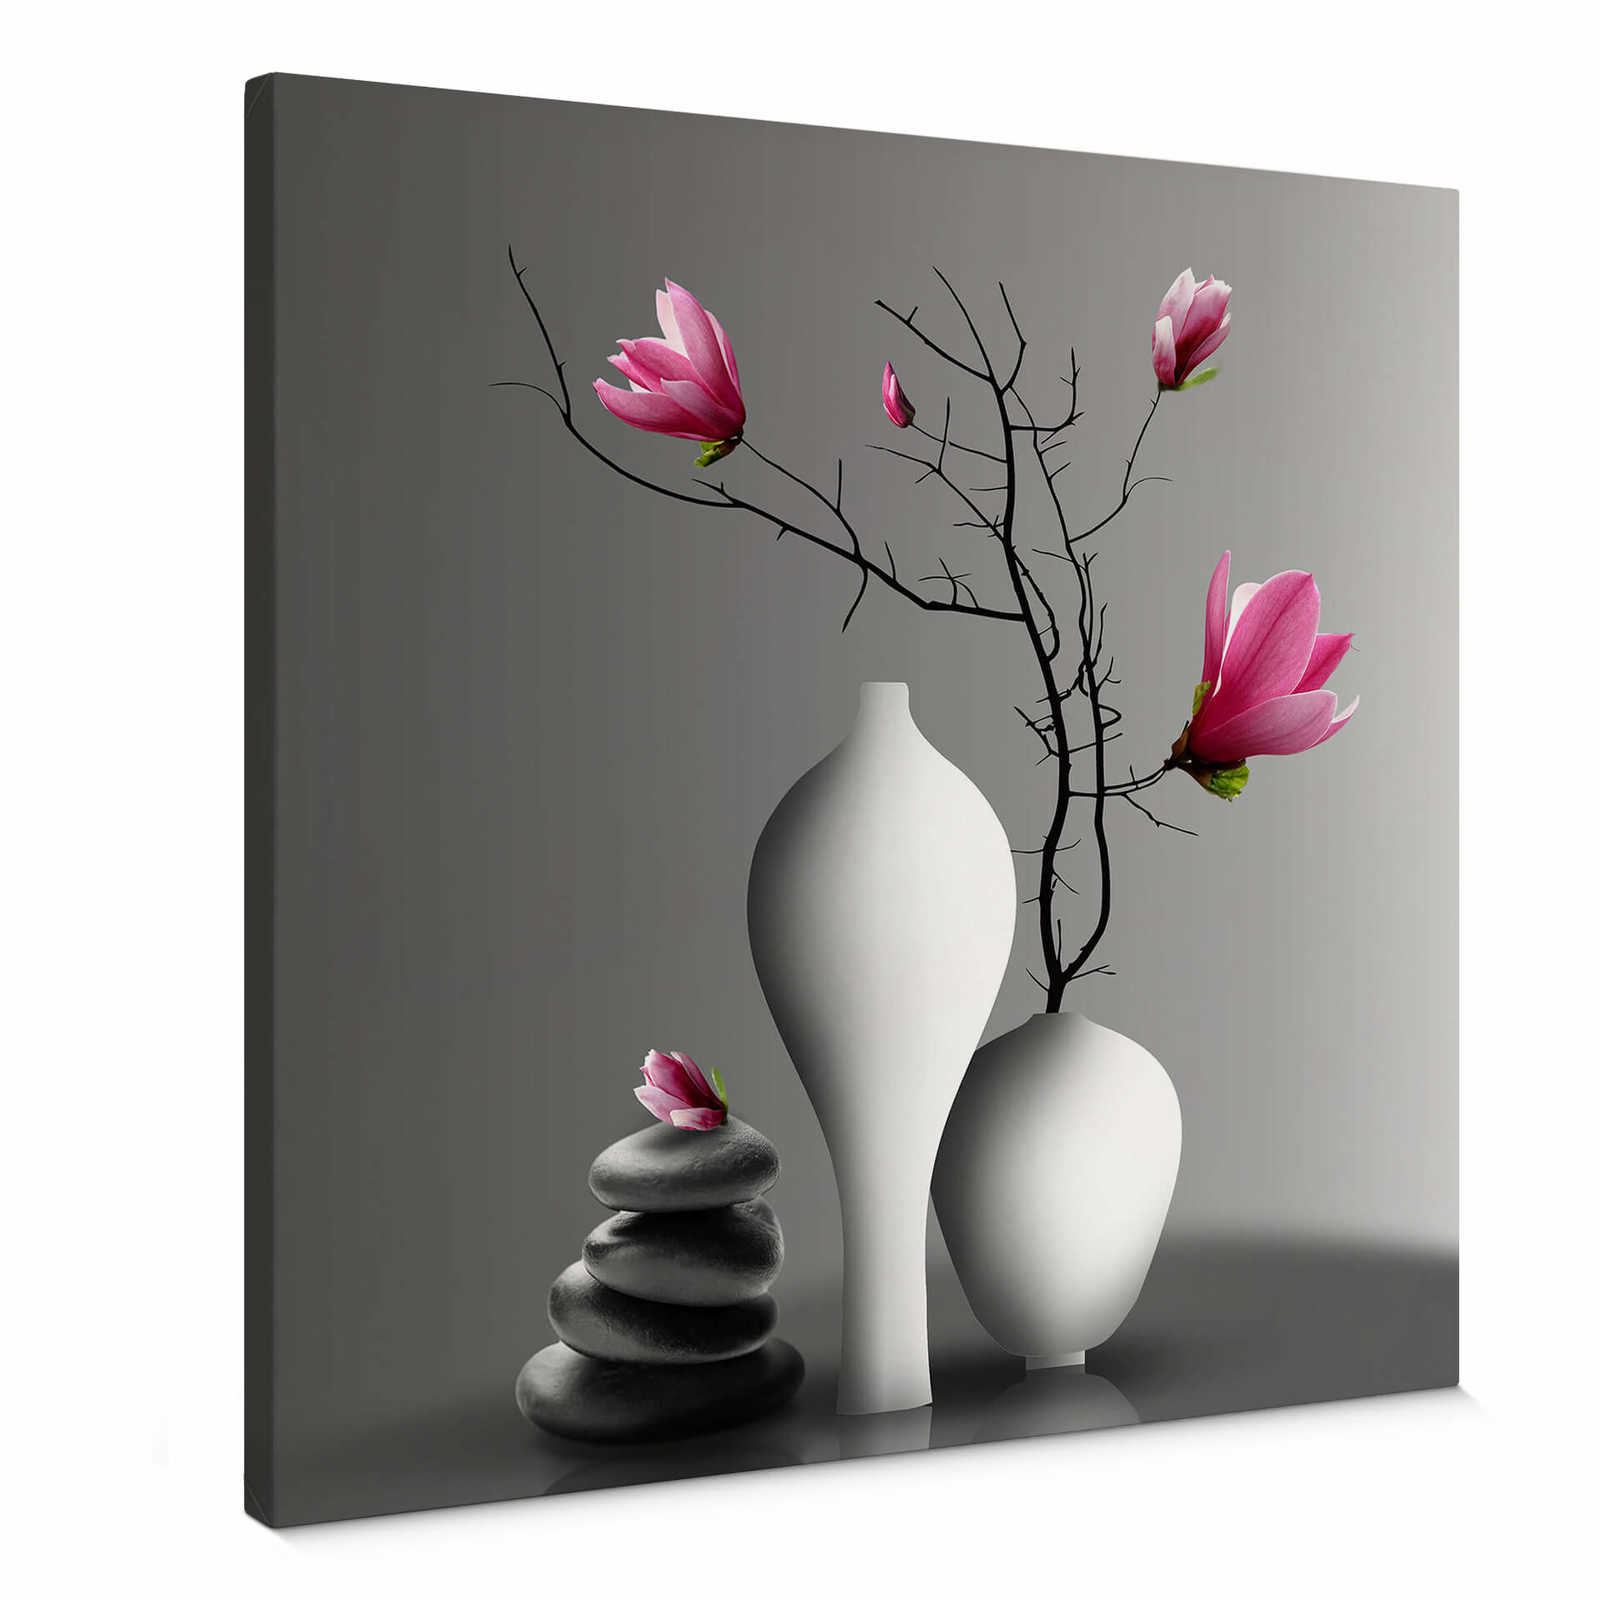         Magnolia branch in a white vase square canvas print
    